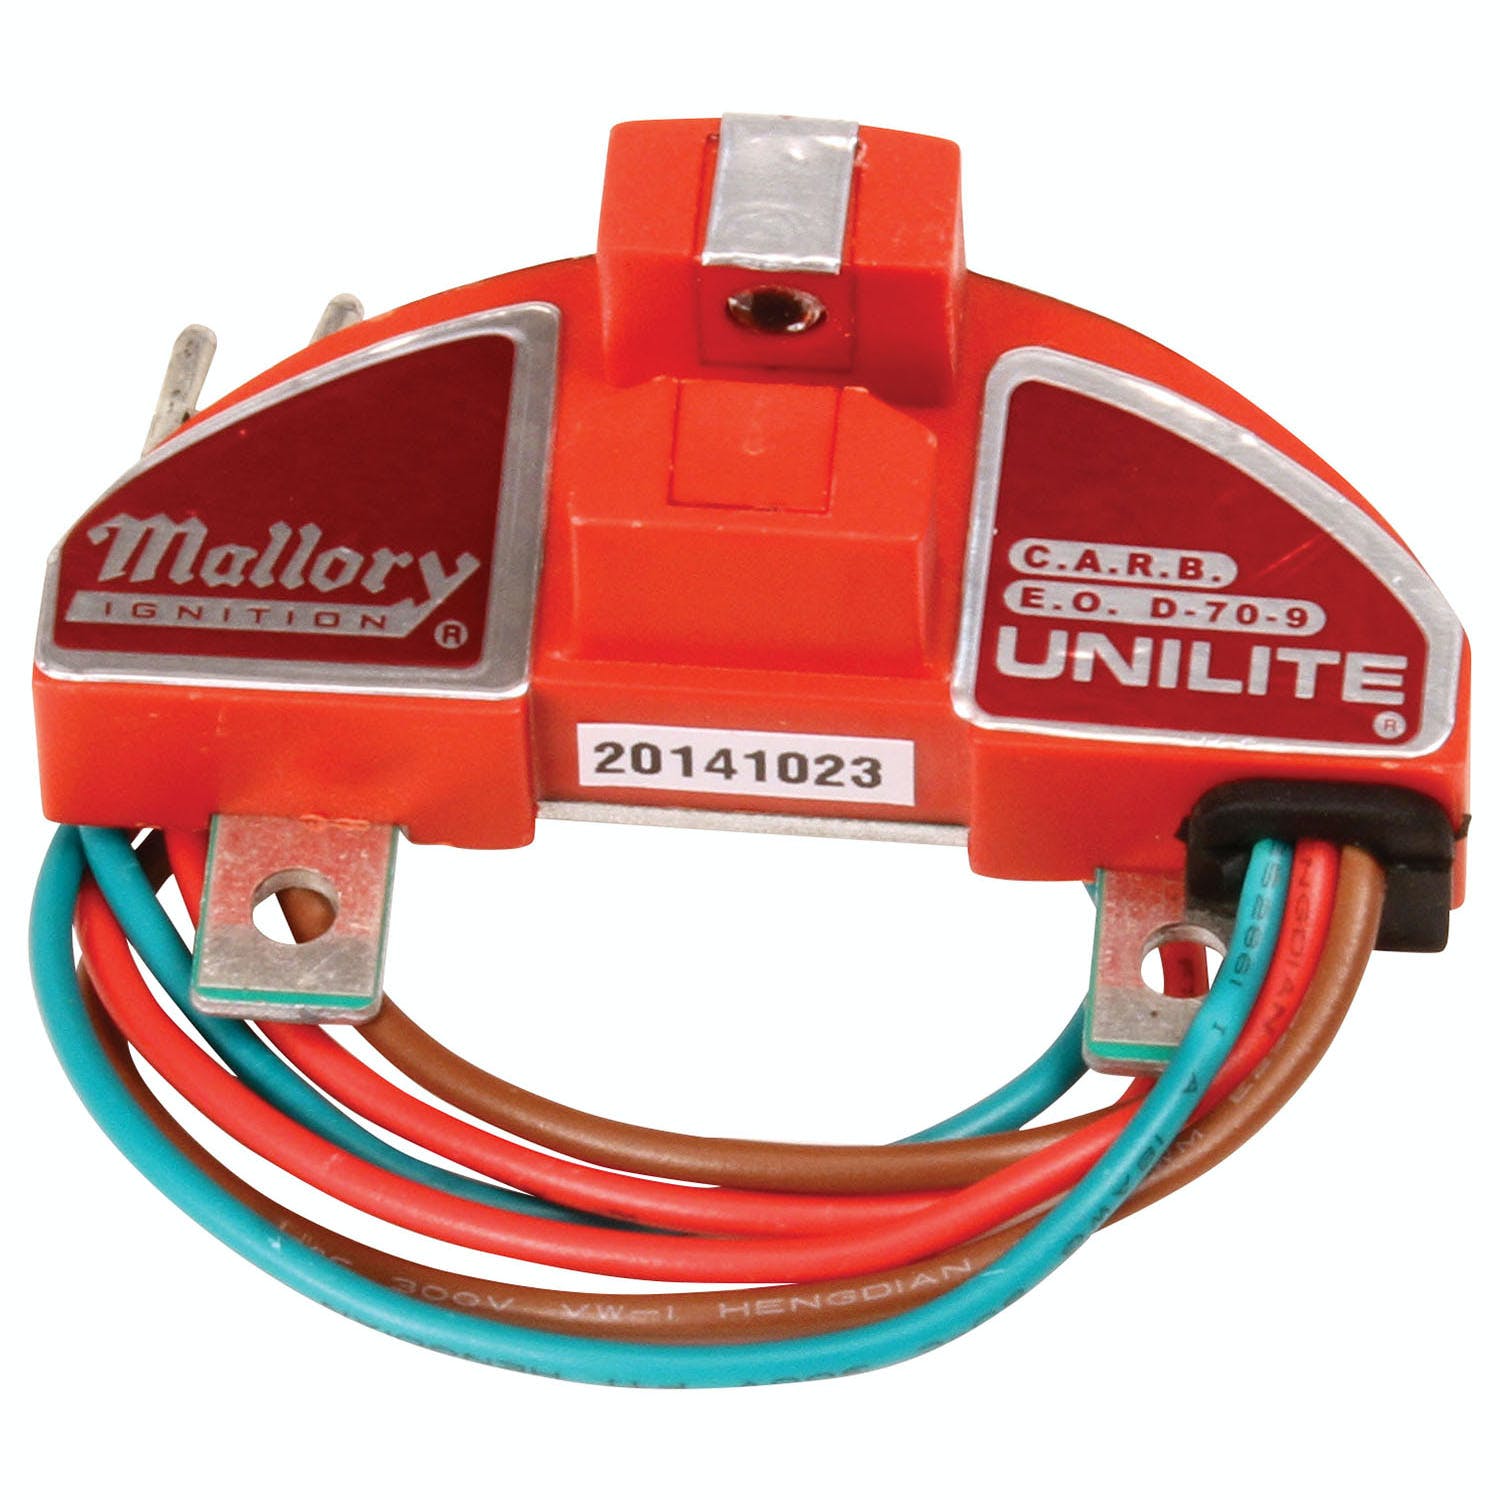 Mallory 605 Mallory Module, Unilite, Thermaclad